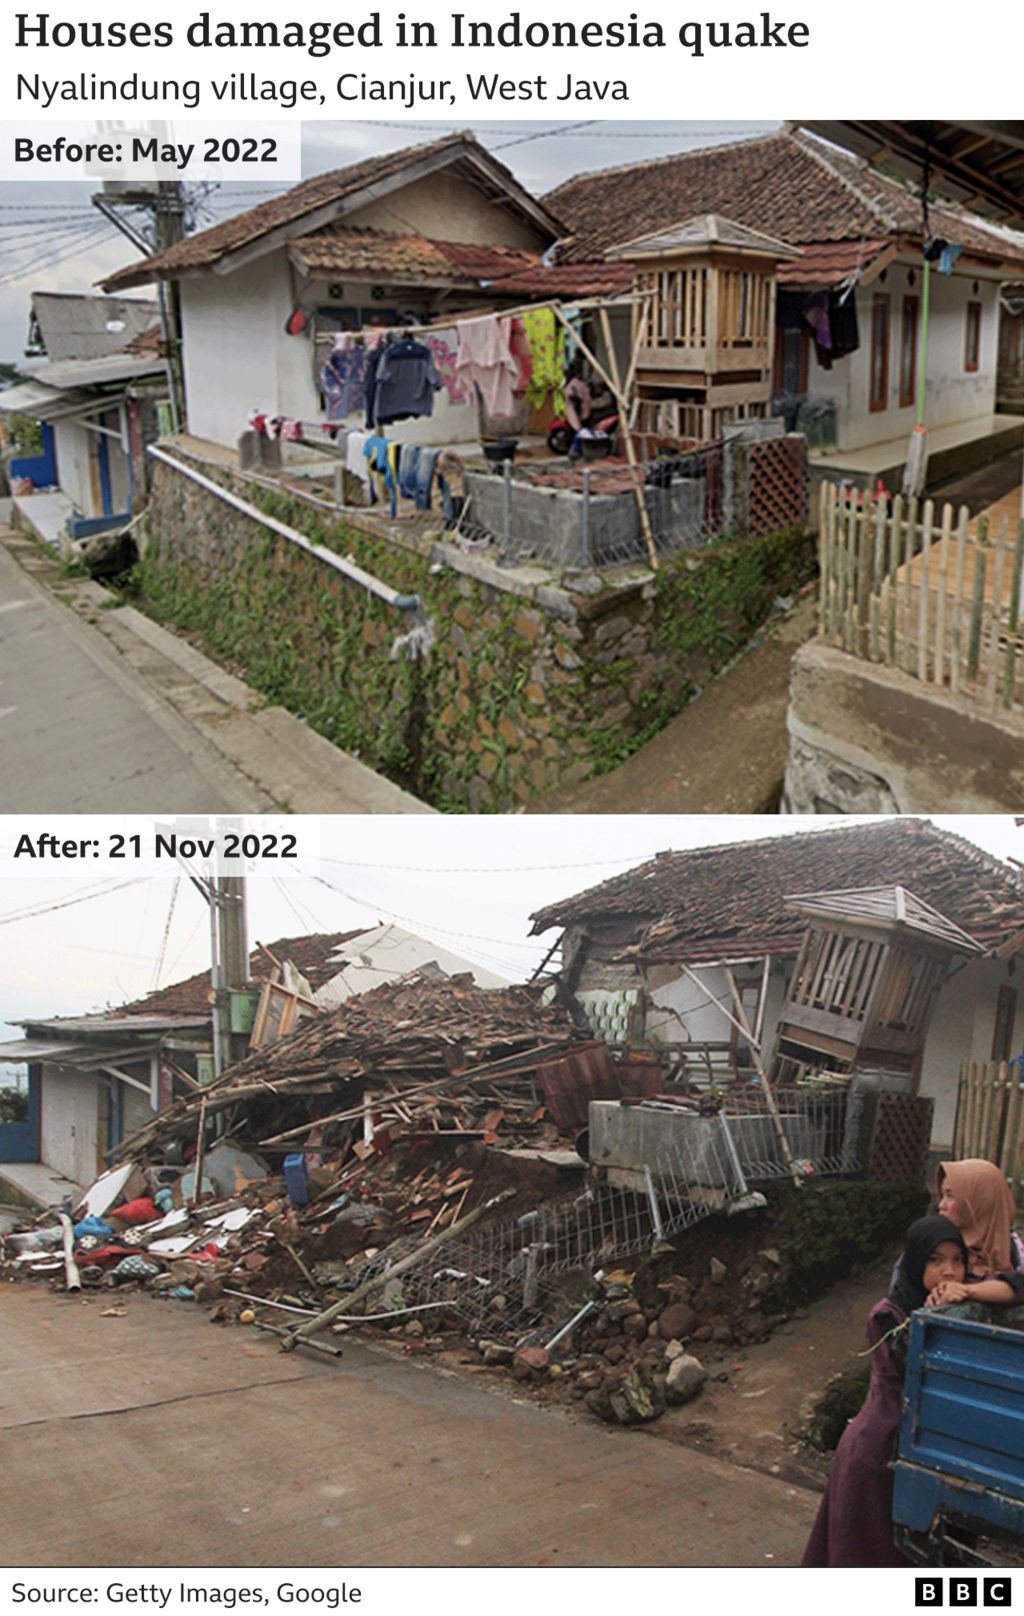 На двух фотографиях показаны дома в деревне Ньялиндунг, Чанджур, Западная Ява, до землетрясения в понедельник, а также обрушившиеся или поврежденные после него